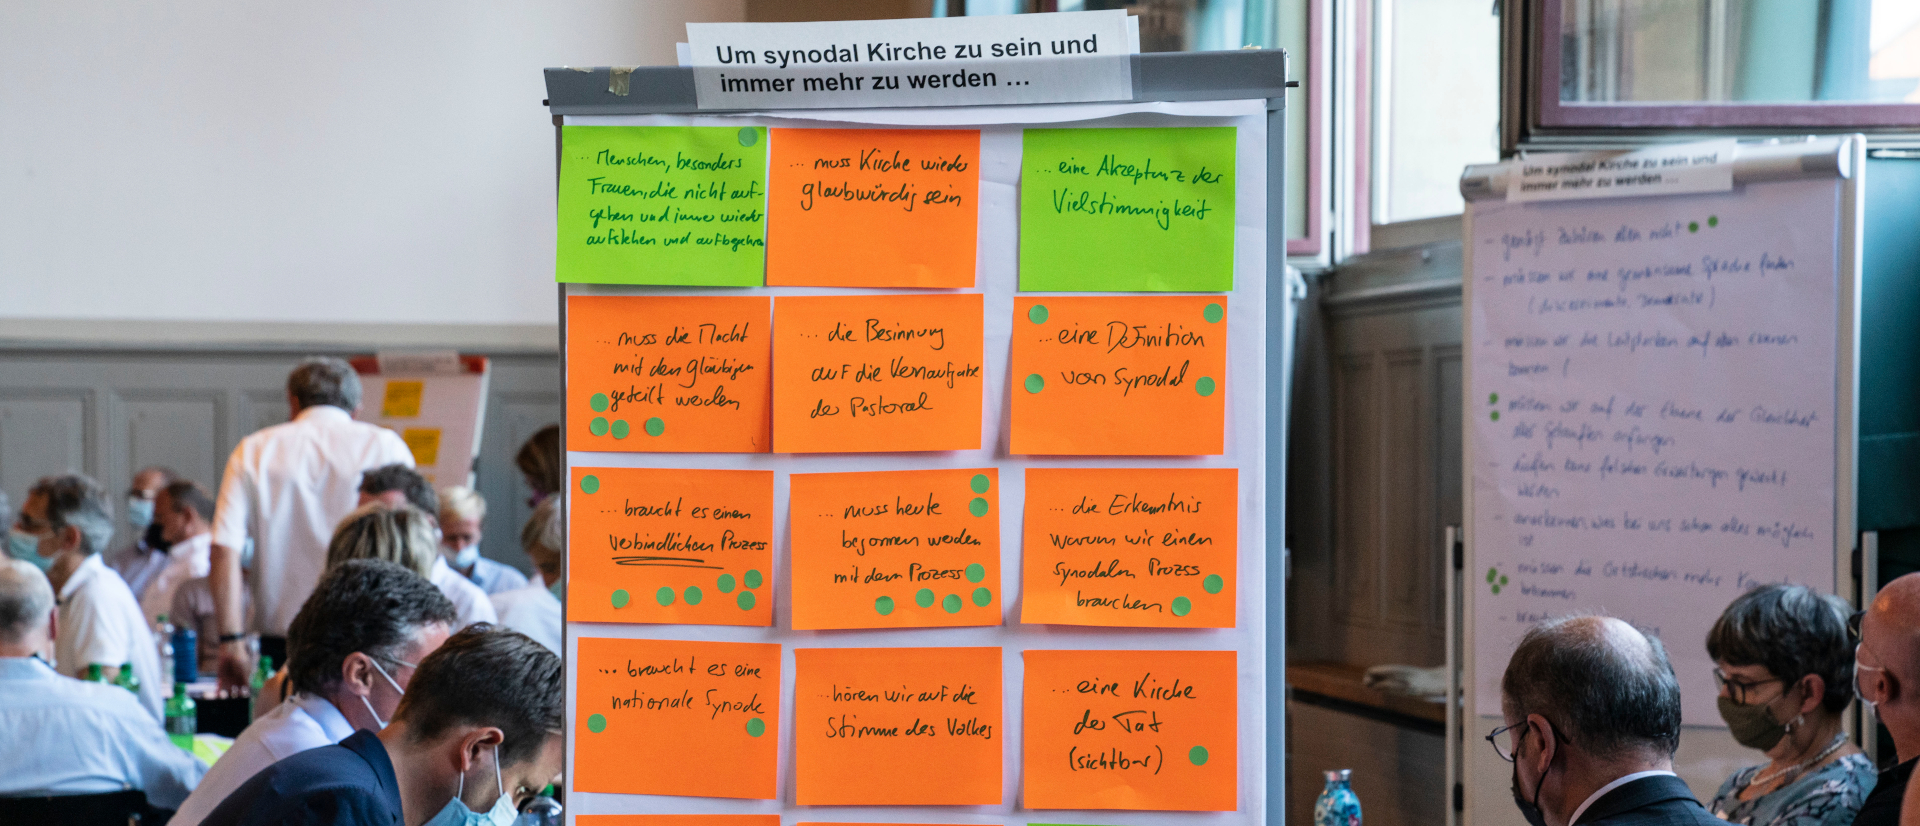 Brainstorming zur Synodalität beim RKZ-Fokus in Bern.